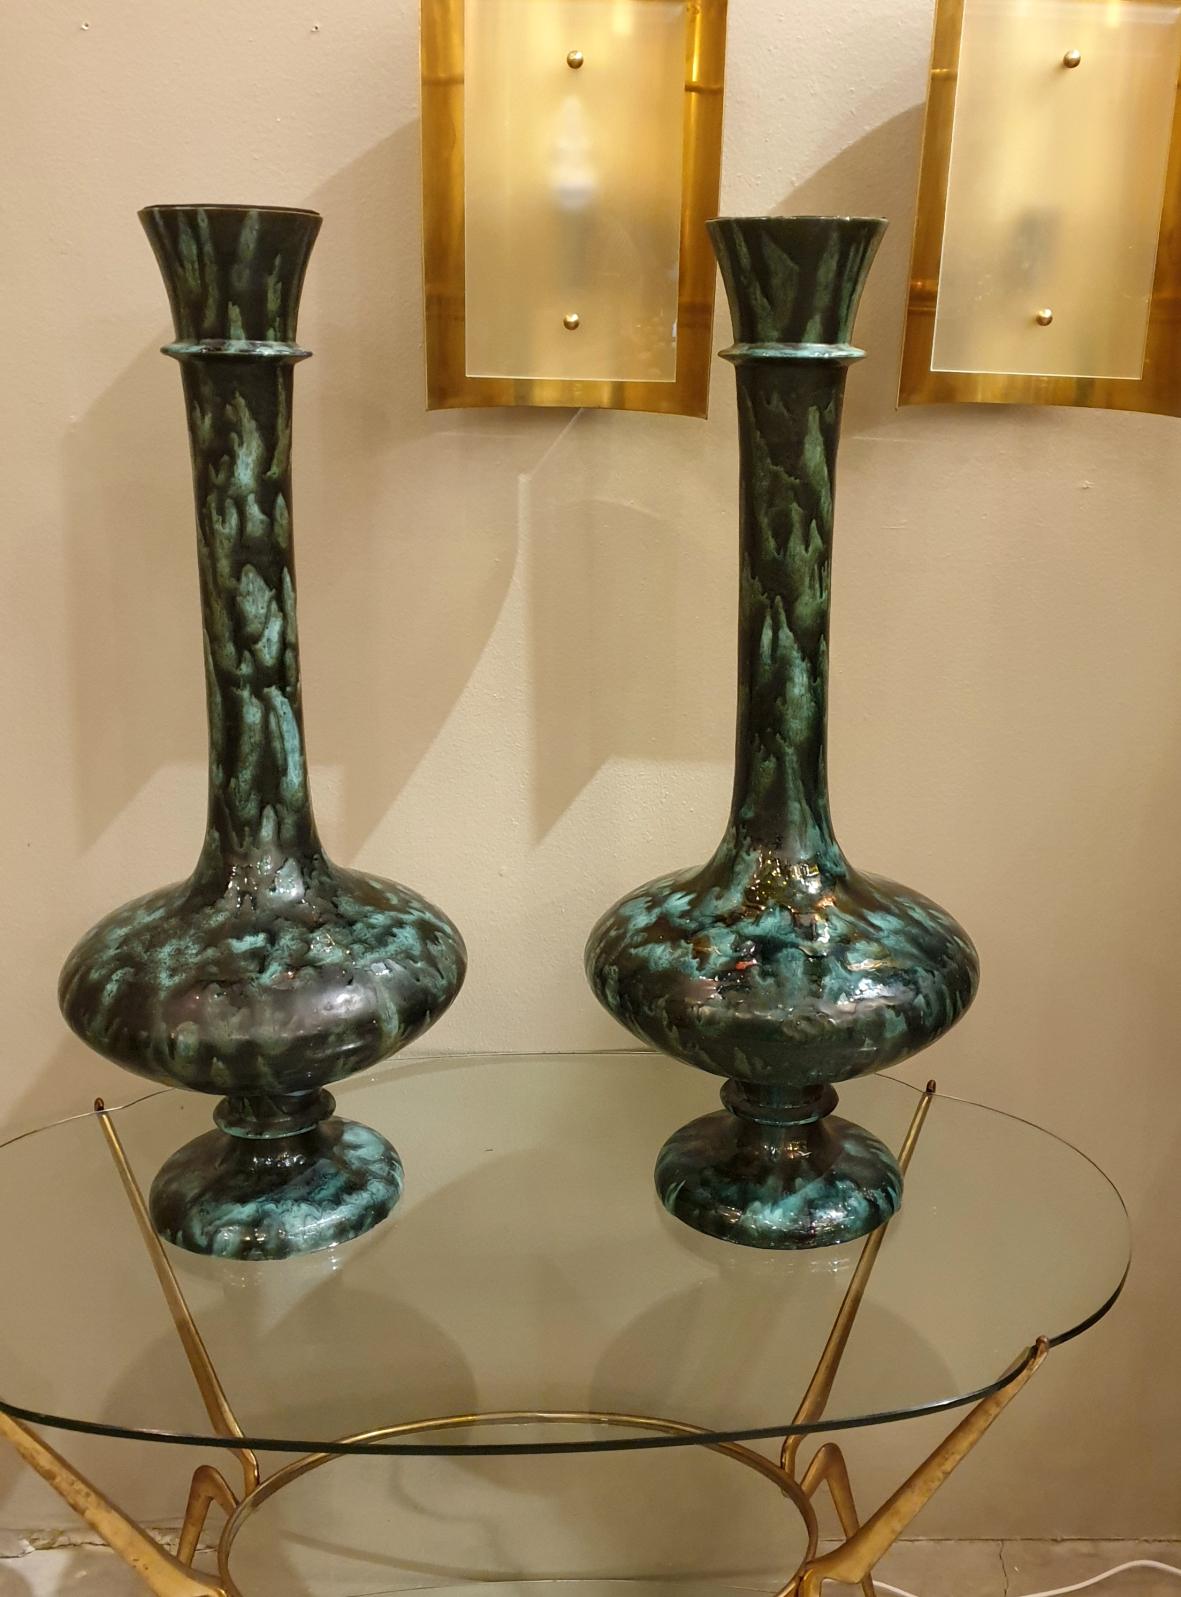 Paar große und hohe Urnen oder Amphora-Vasen, Mid-Century Modern, Italien, 1960er Jahre.
Das Paar italienischer Vasen im Vintage-Stil hat dunkelgrüne und schwarze Farbtöne, mit einem Metallteil im Inneren des oberen Teils jeder Vase.
Schöne